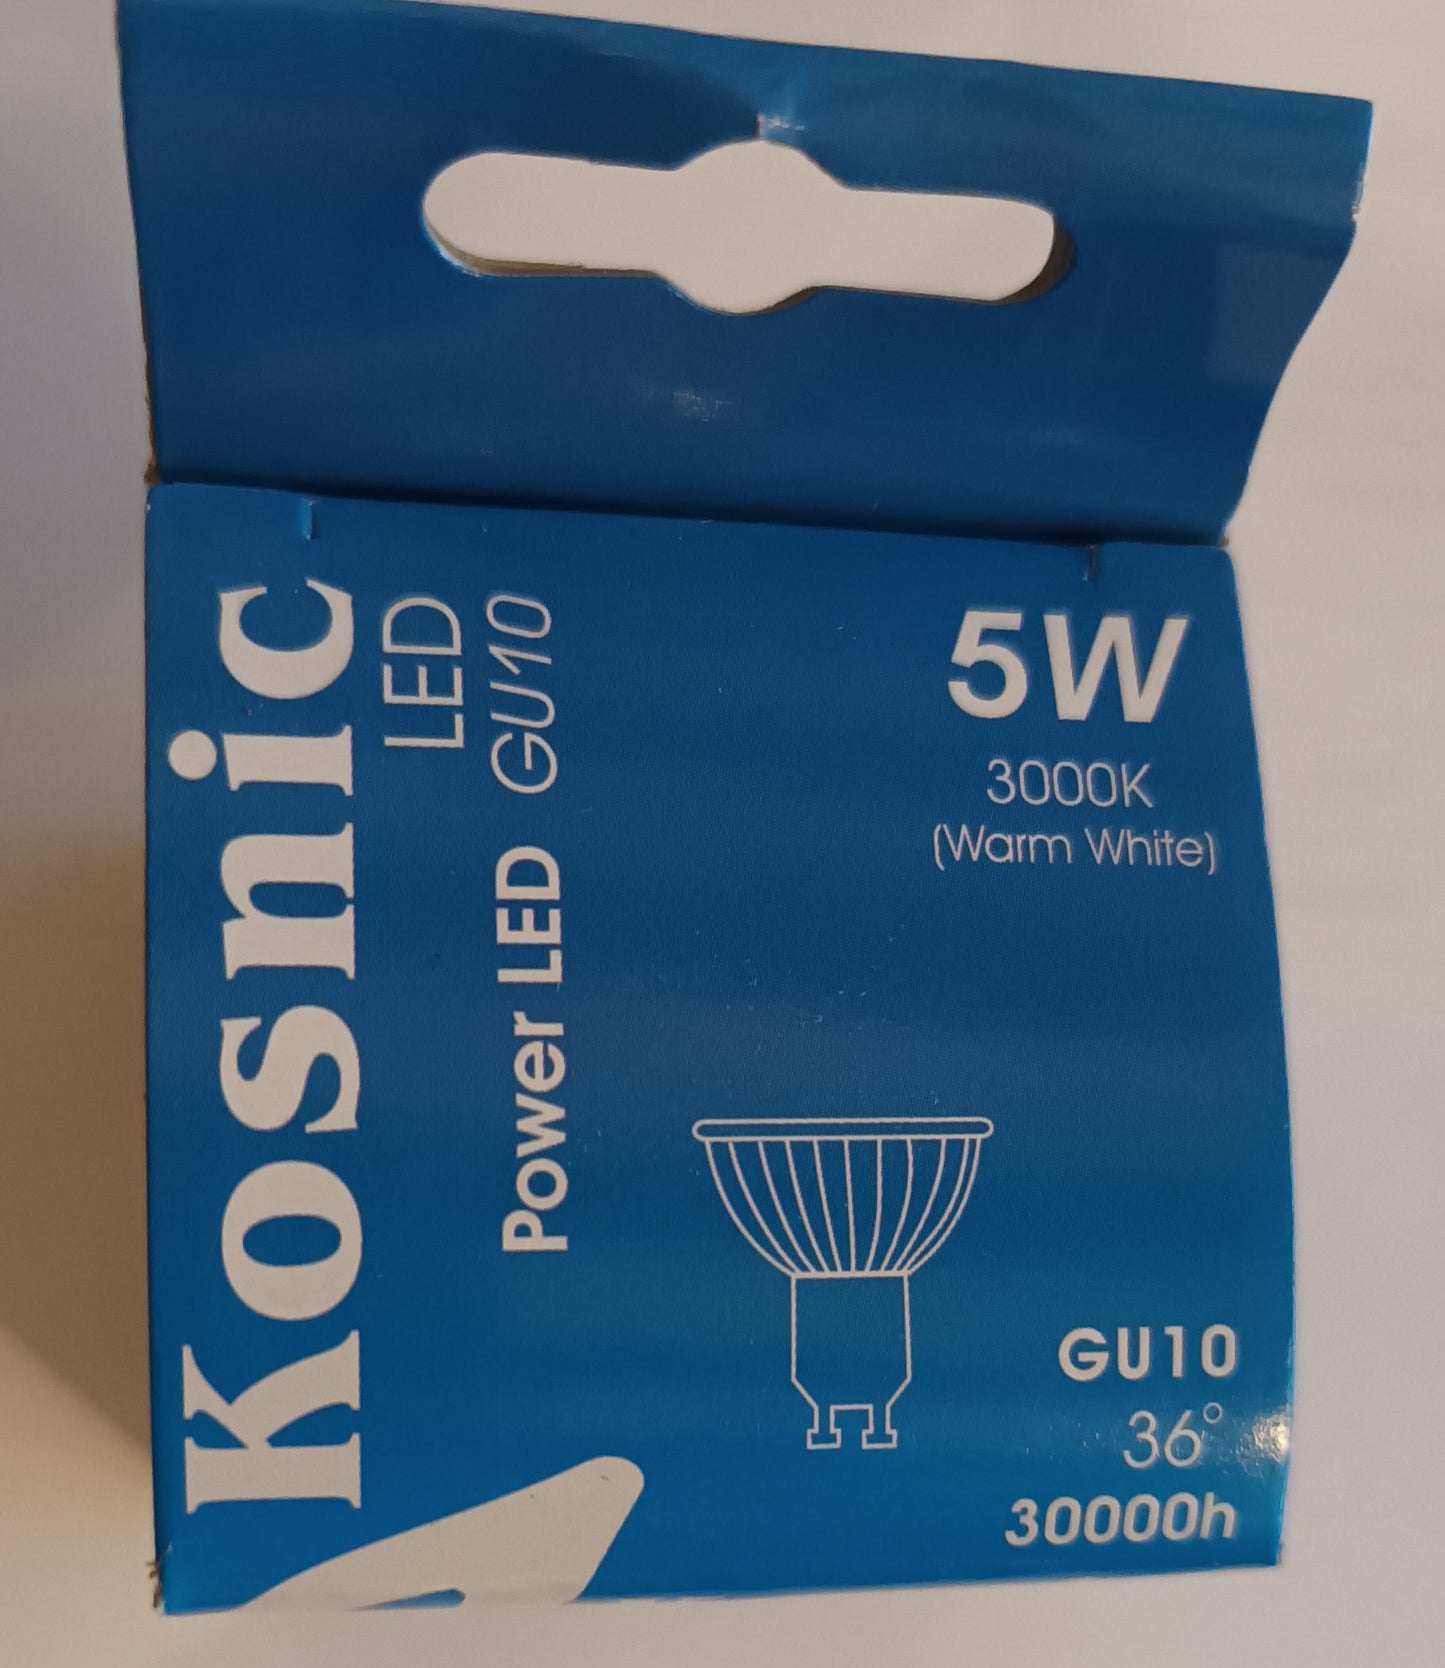 GU10 LED 5w = 42w warm white 36deg 30,000hrs life by Kosnic